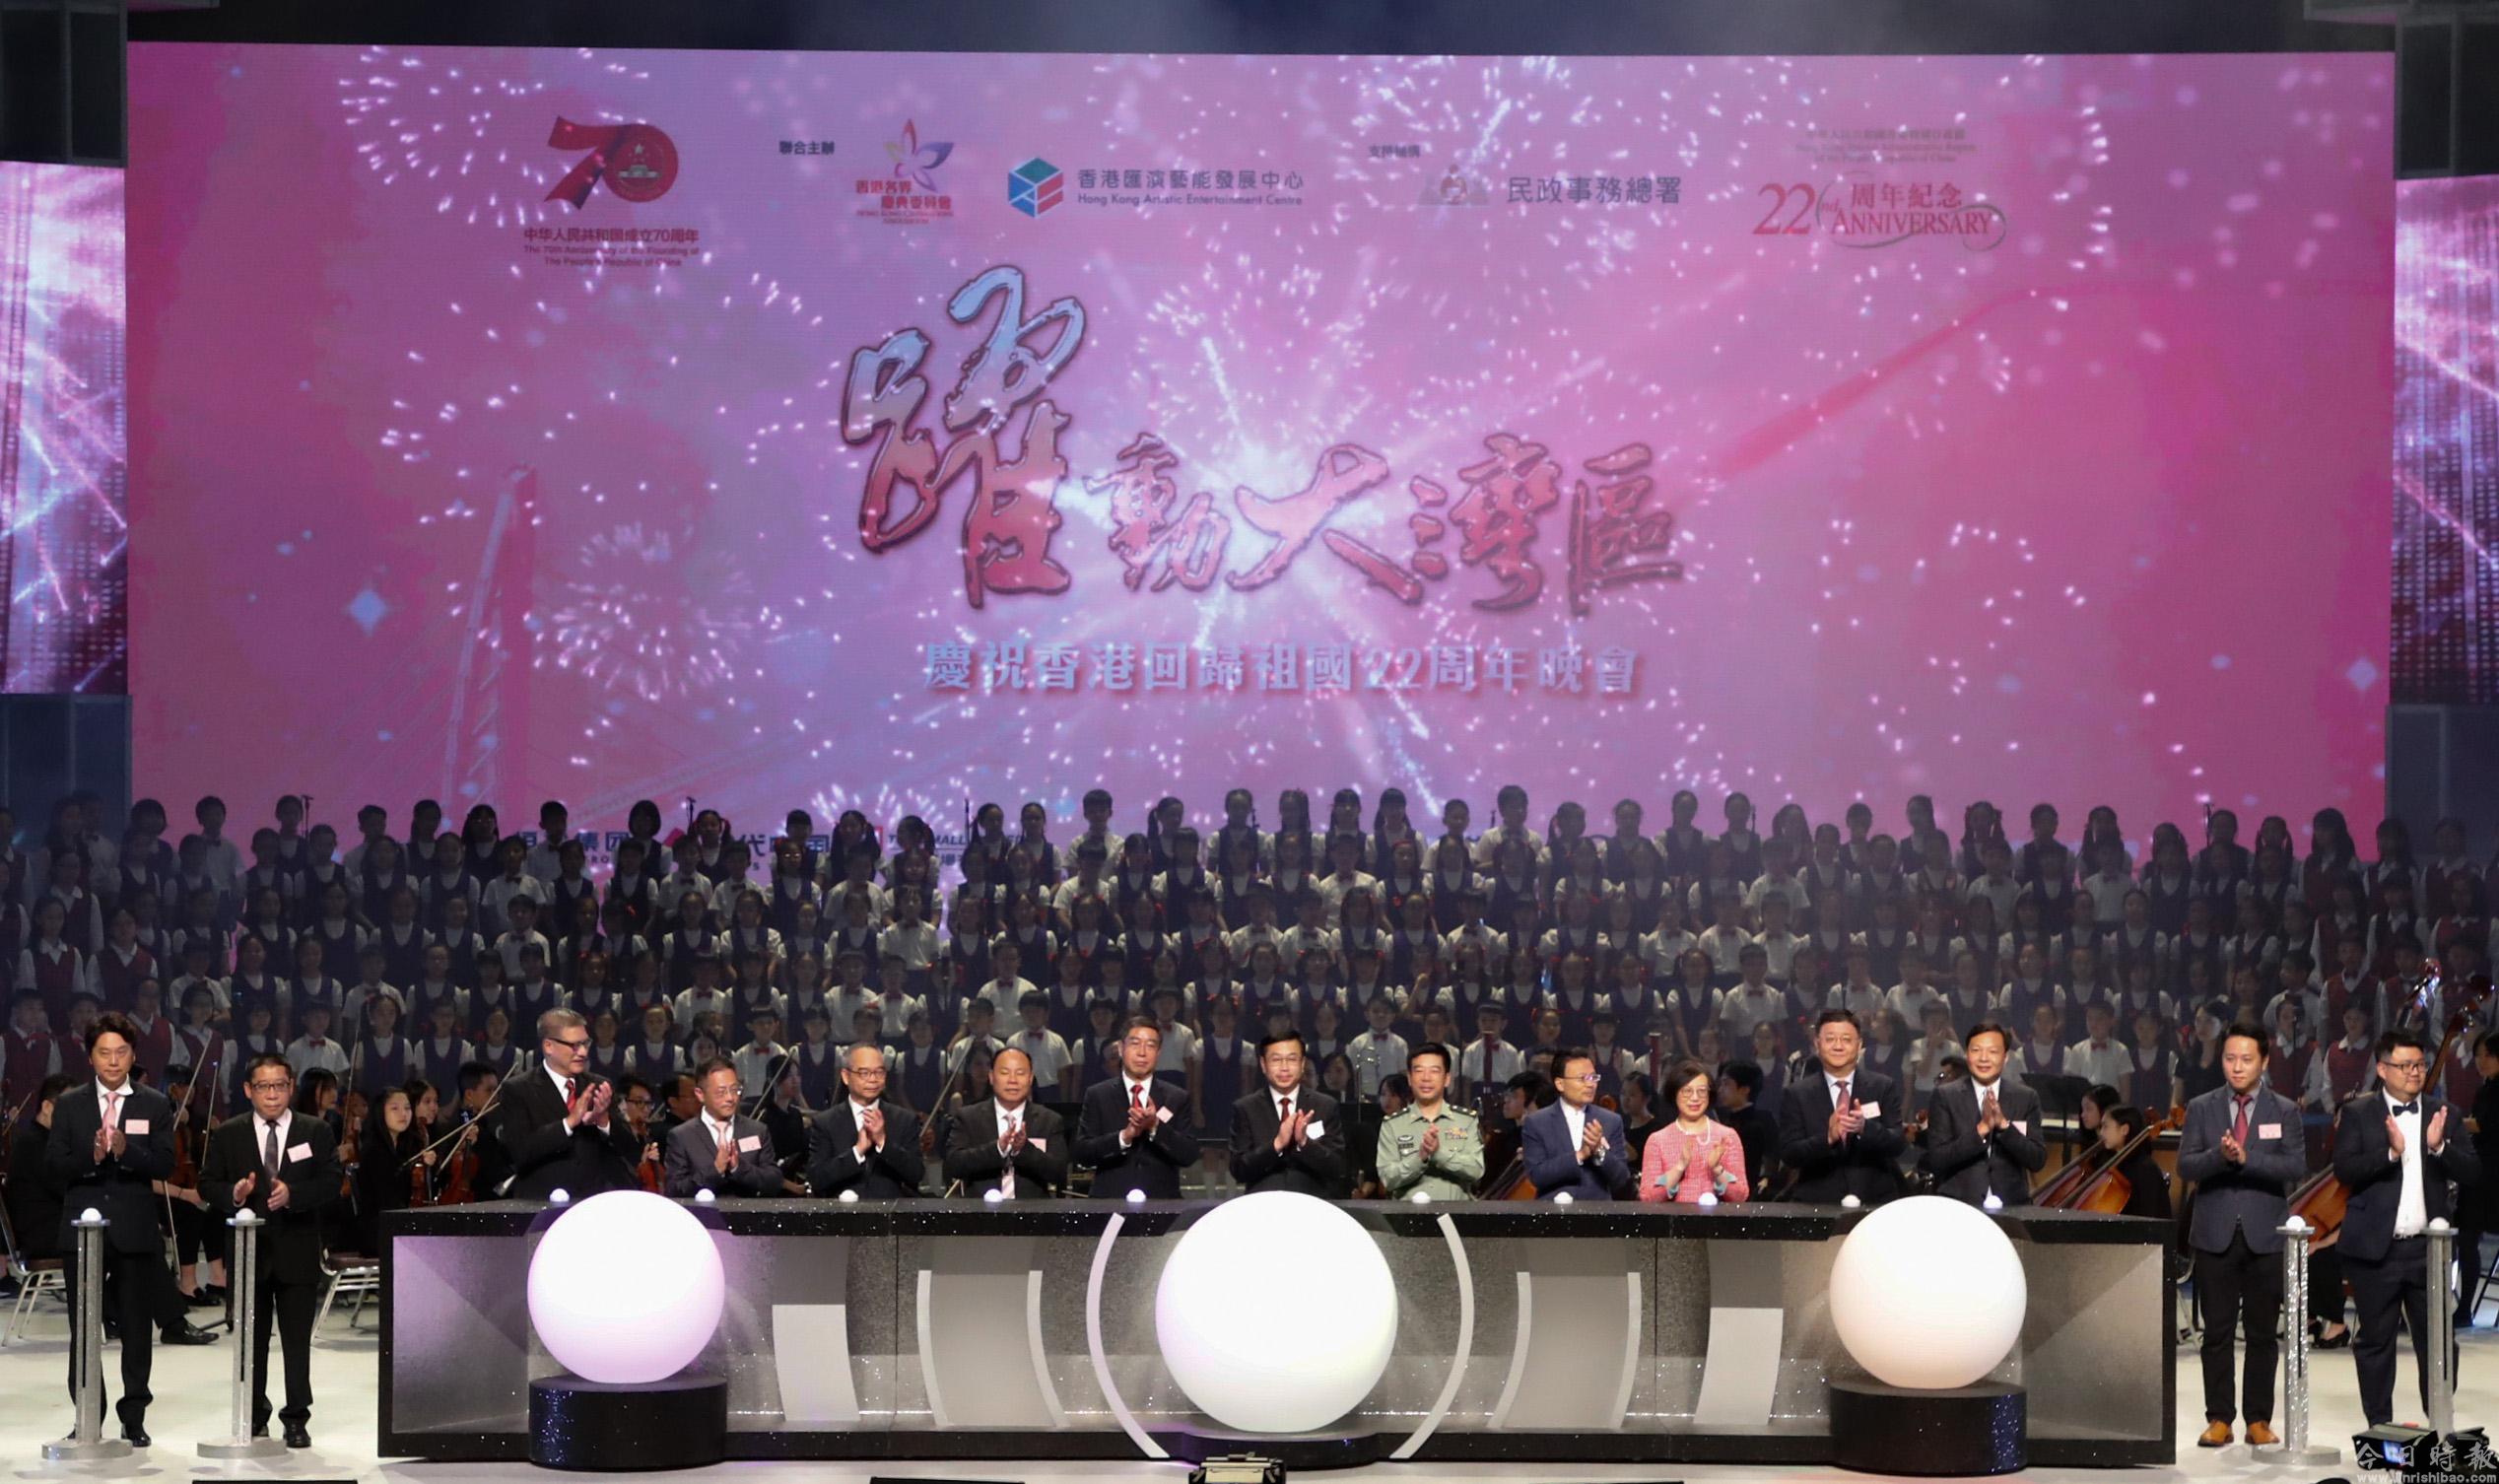 何靖出席“跃动大湾区”庆祝香港回归祖国22周年晚会